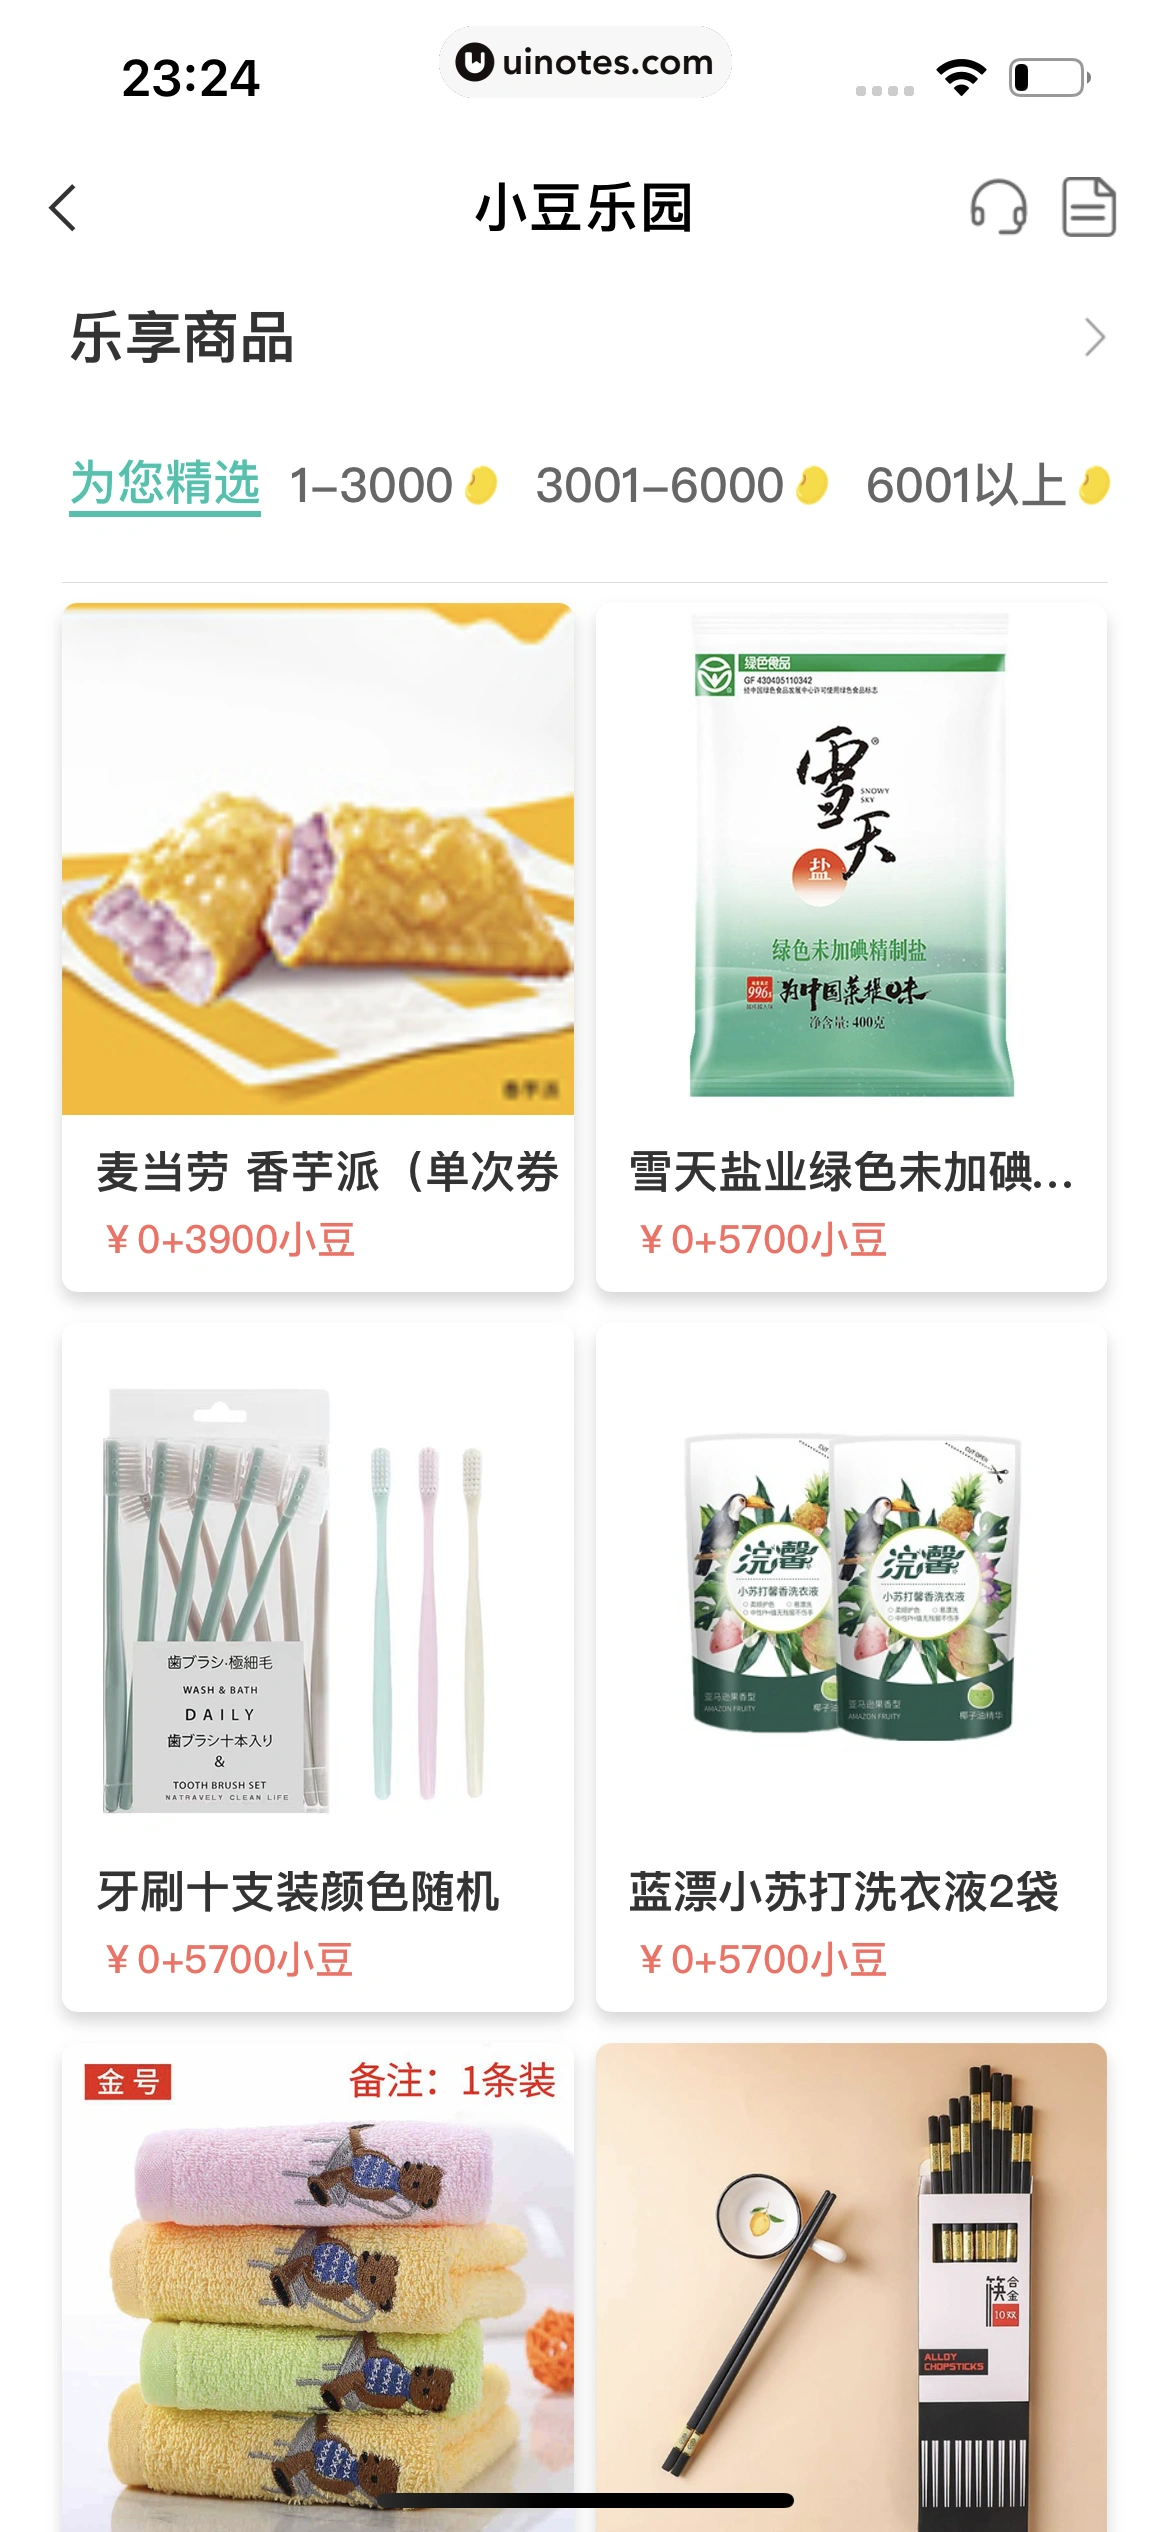 中国农业银行 App 截图 032 - UI Notes